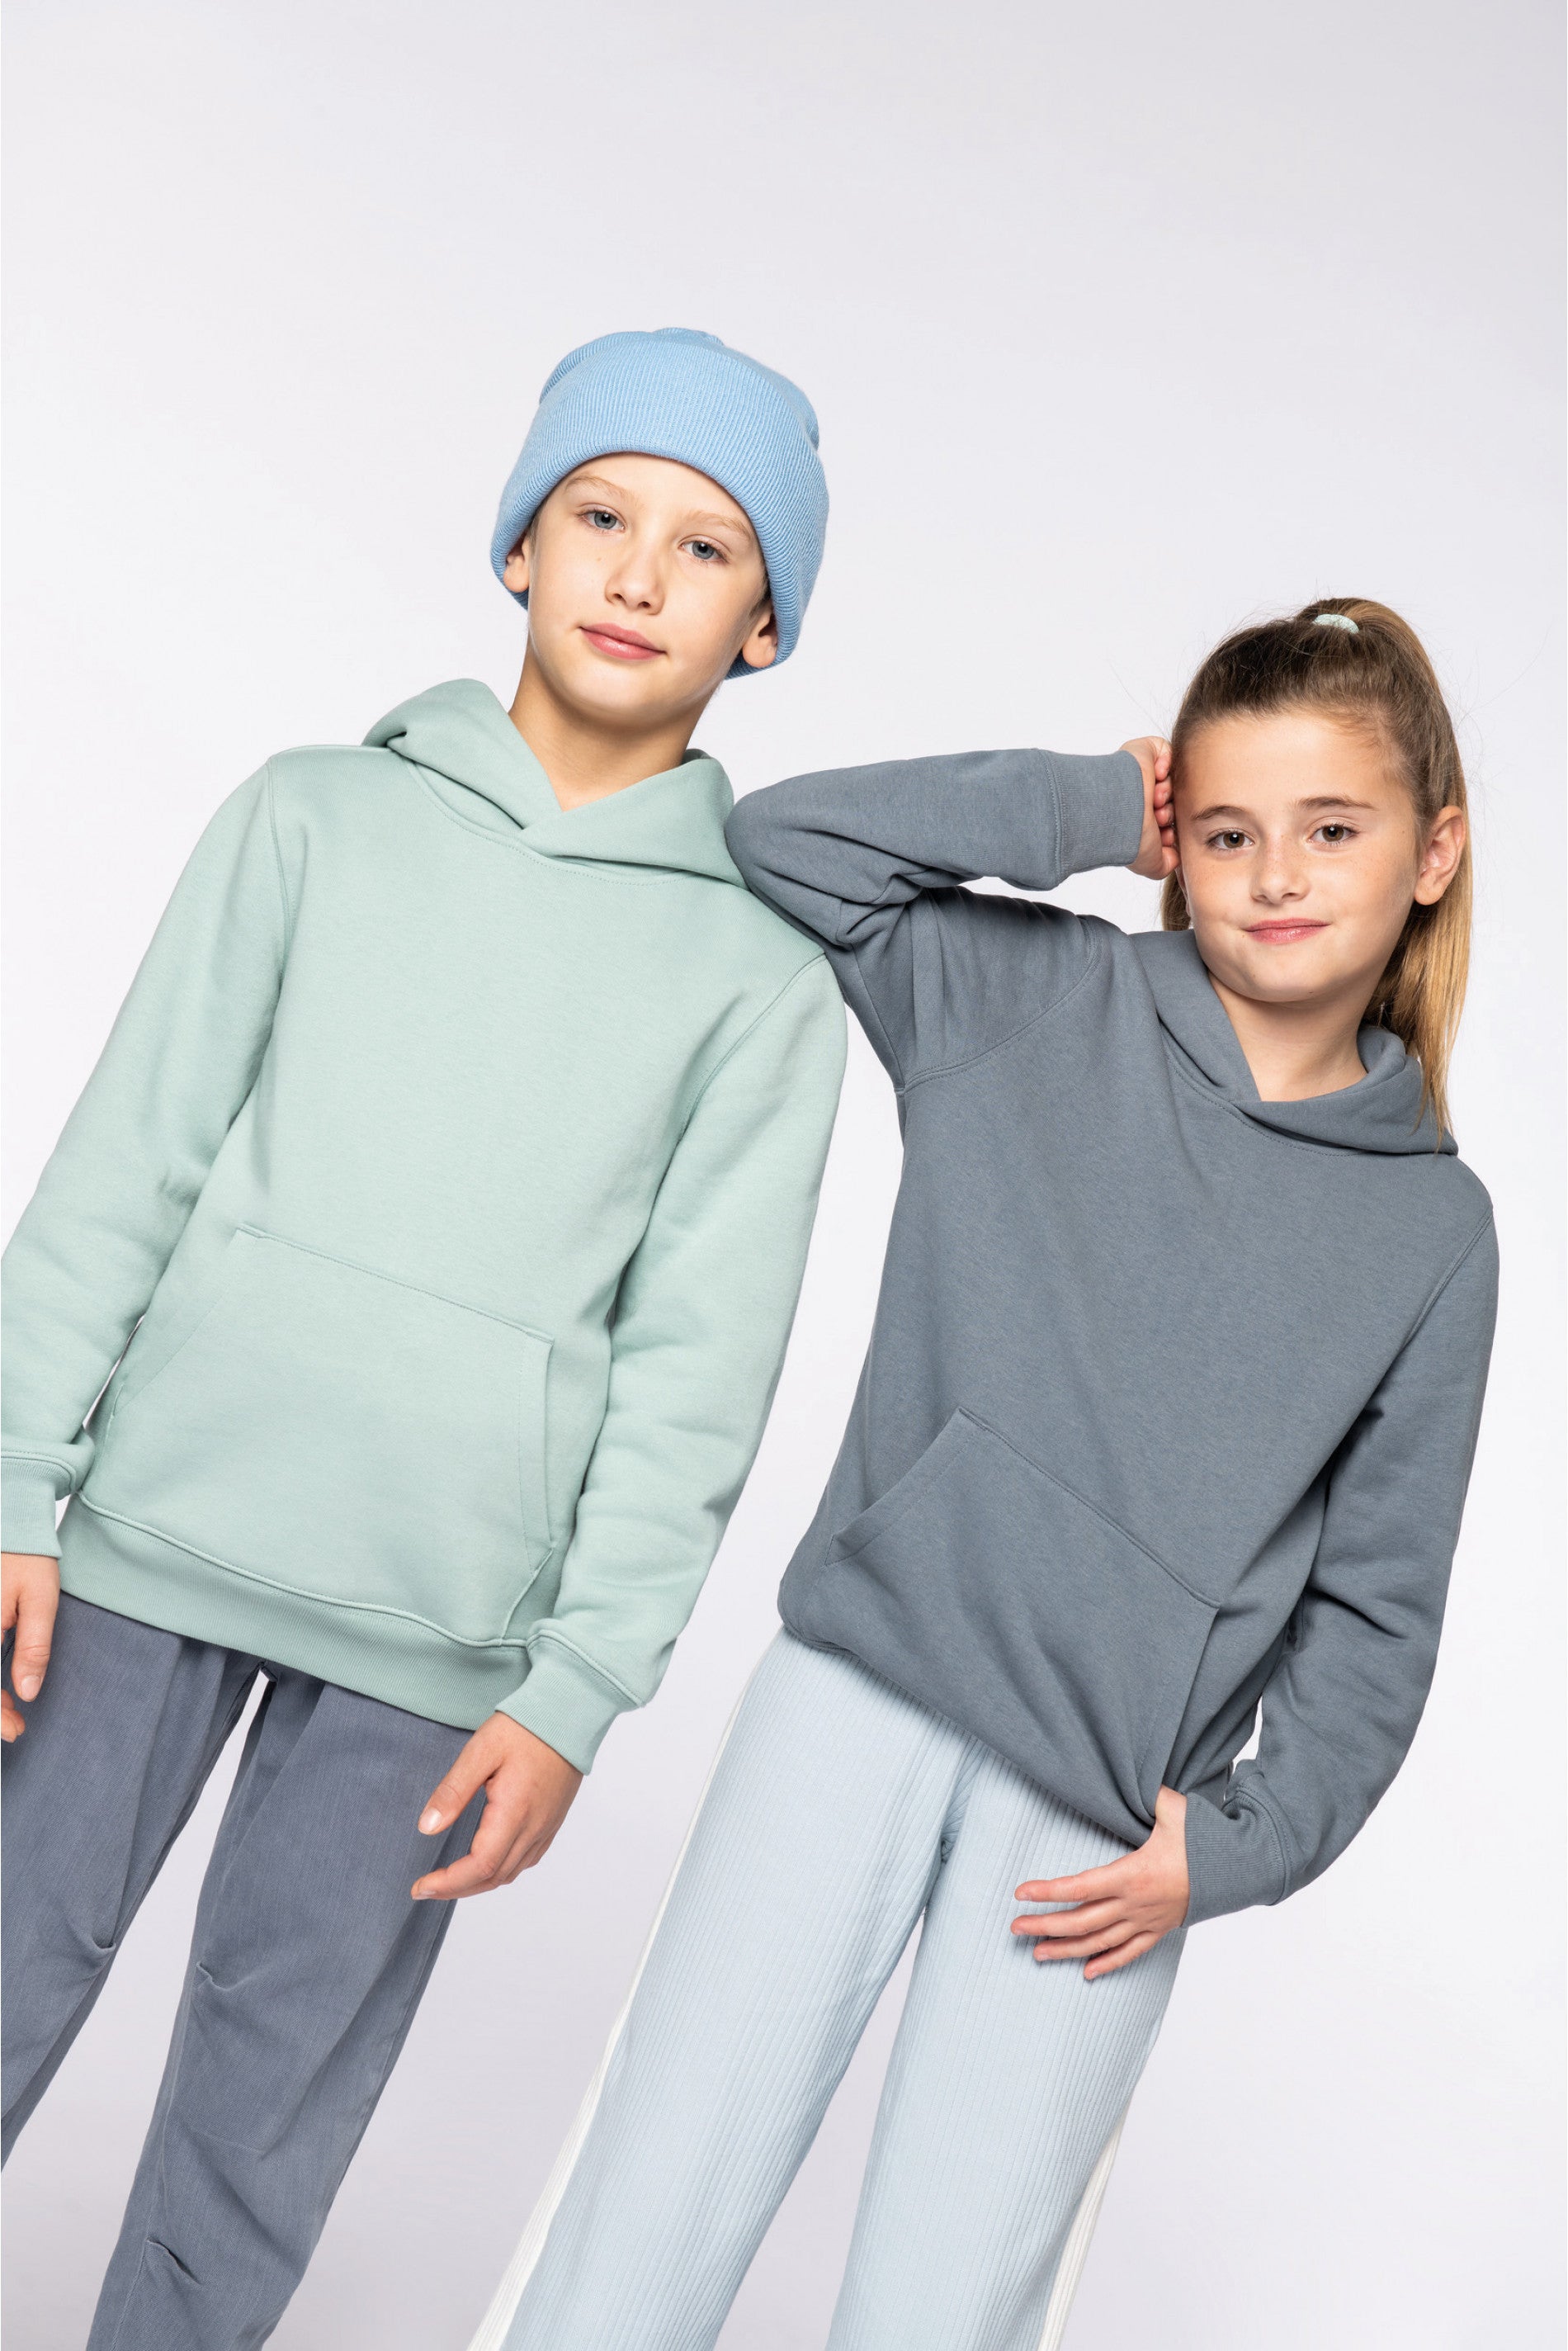 HANGAR premium hoodie kids - 350gr/m²